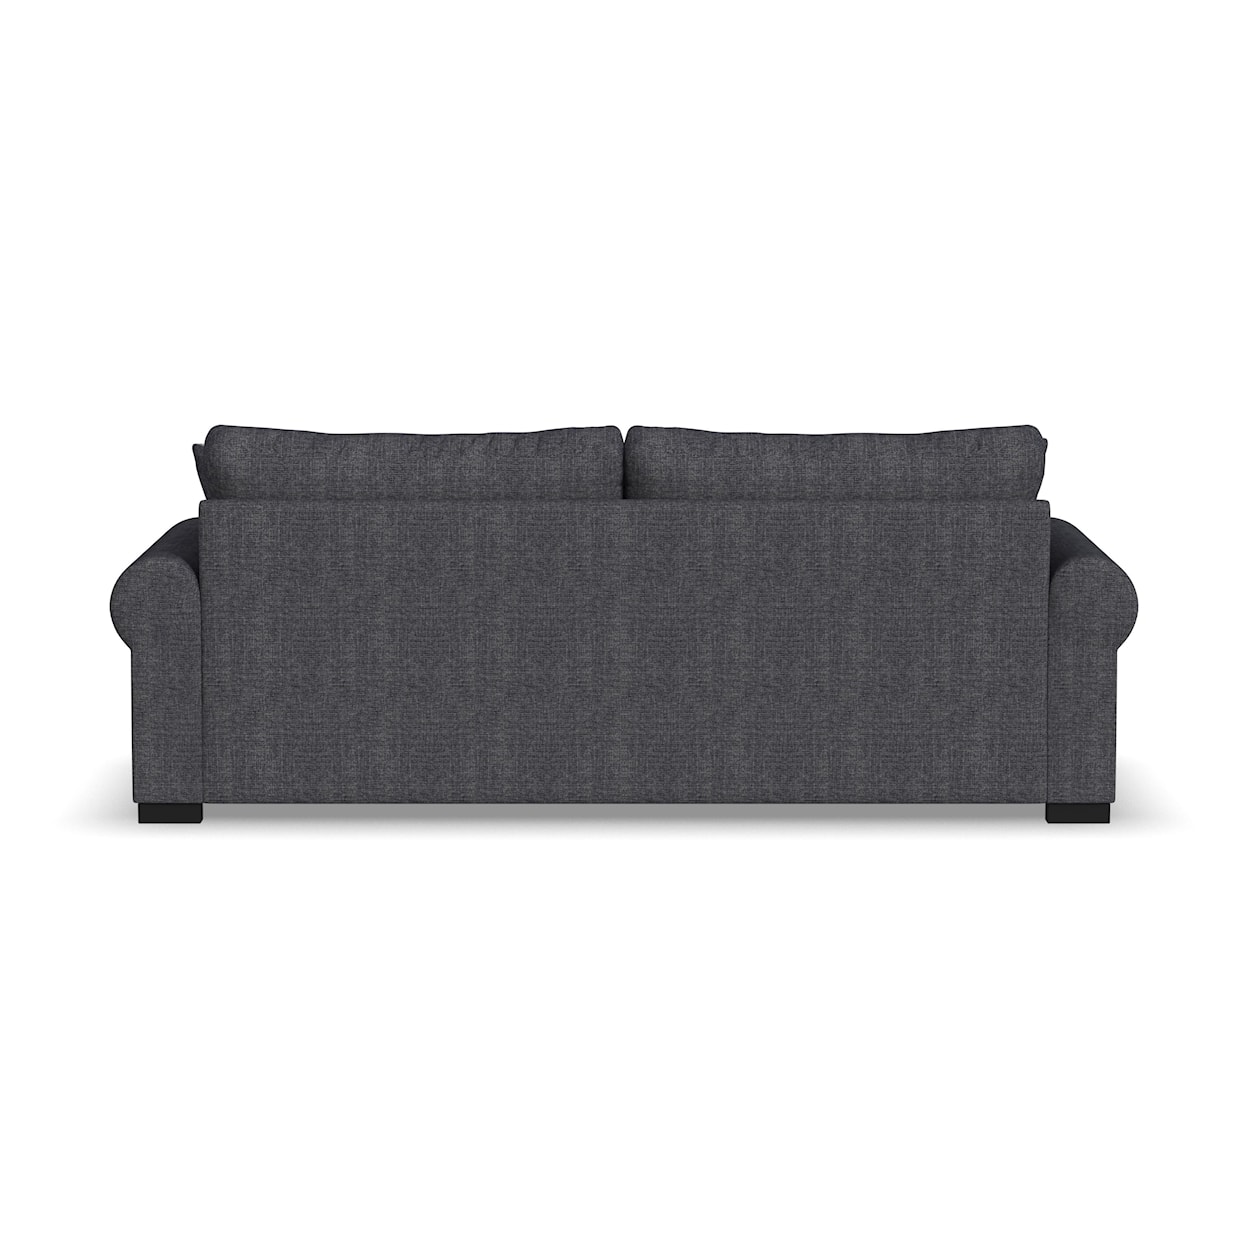 Flexsteel Charisma - Florence Extra Large Two-Cushion Sofa